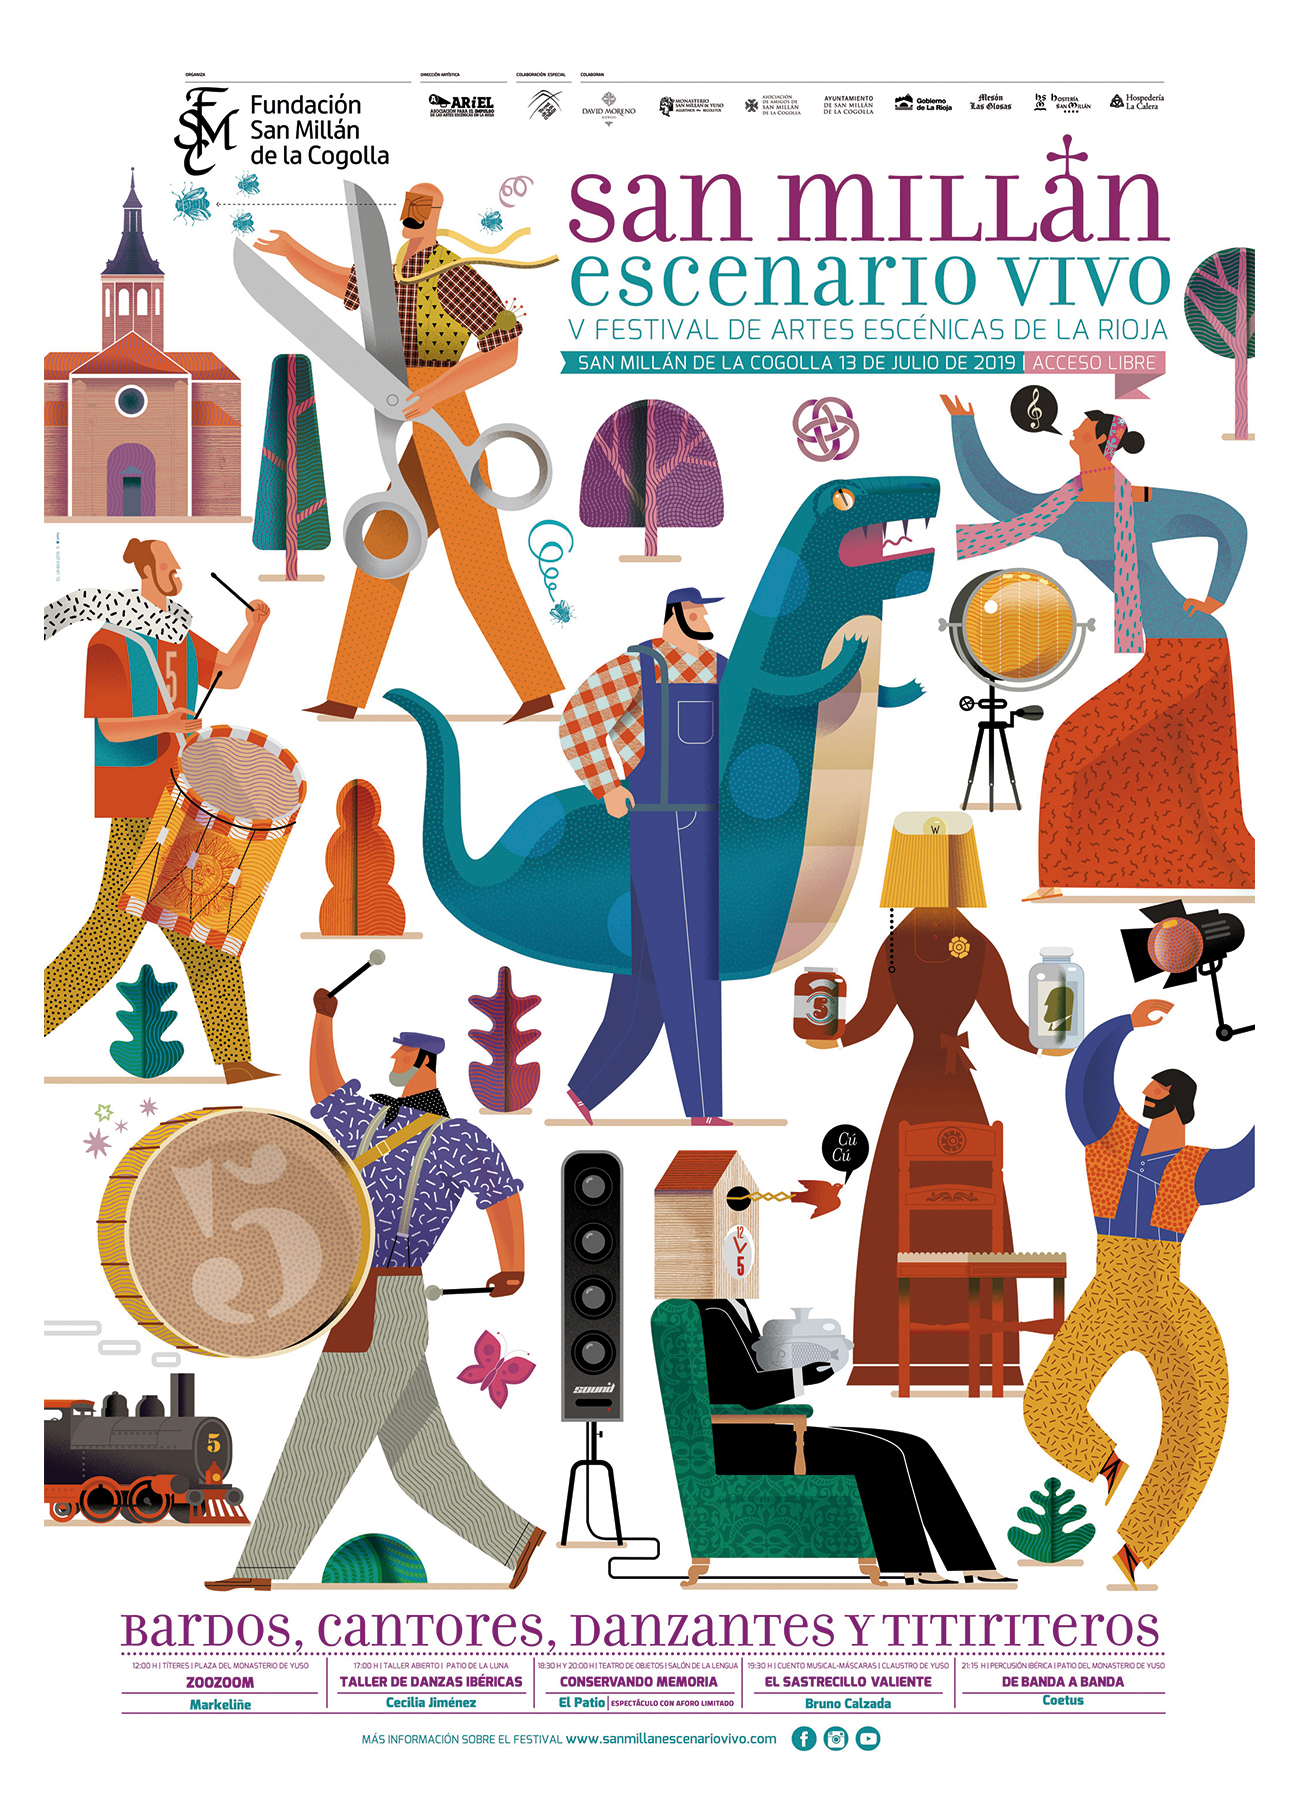 San Millán Escenario Vivo, V Festival de Artes Escénicas en La Rioja